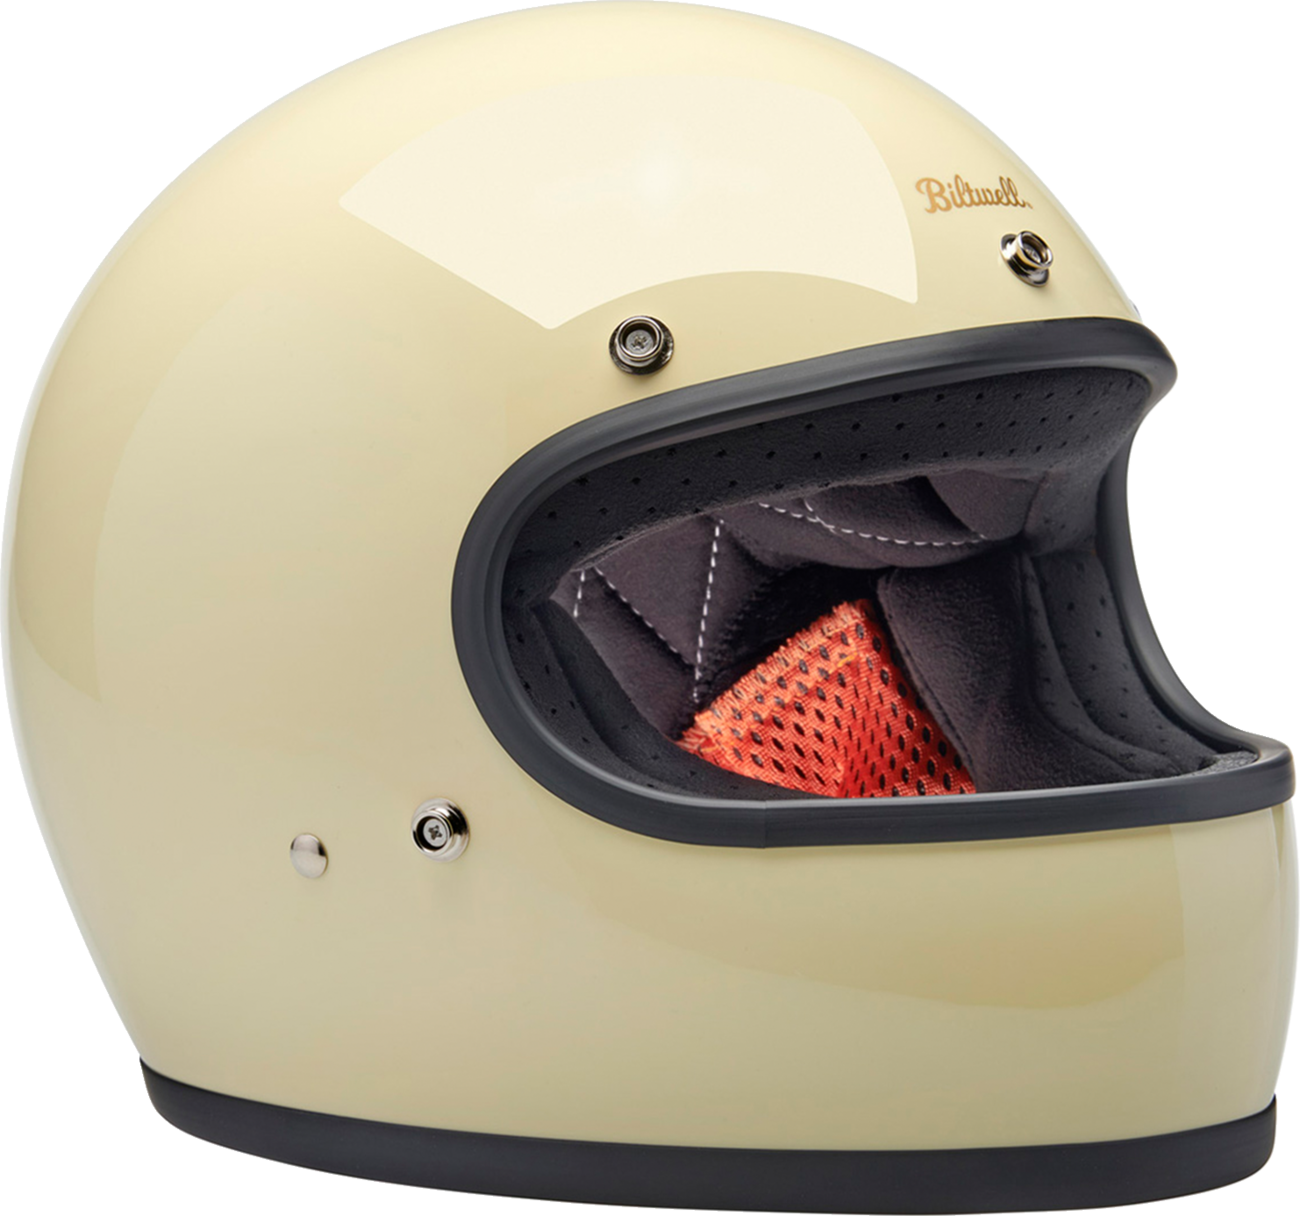 BILTWELL Gringo Helmet - Gloss White - Large 1002-102-504